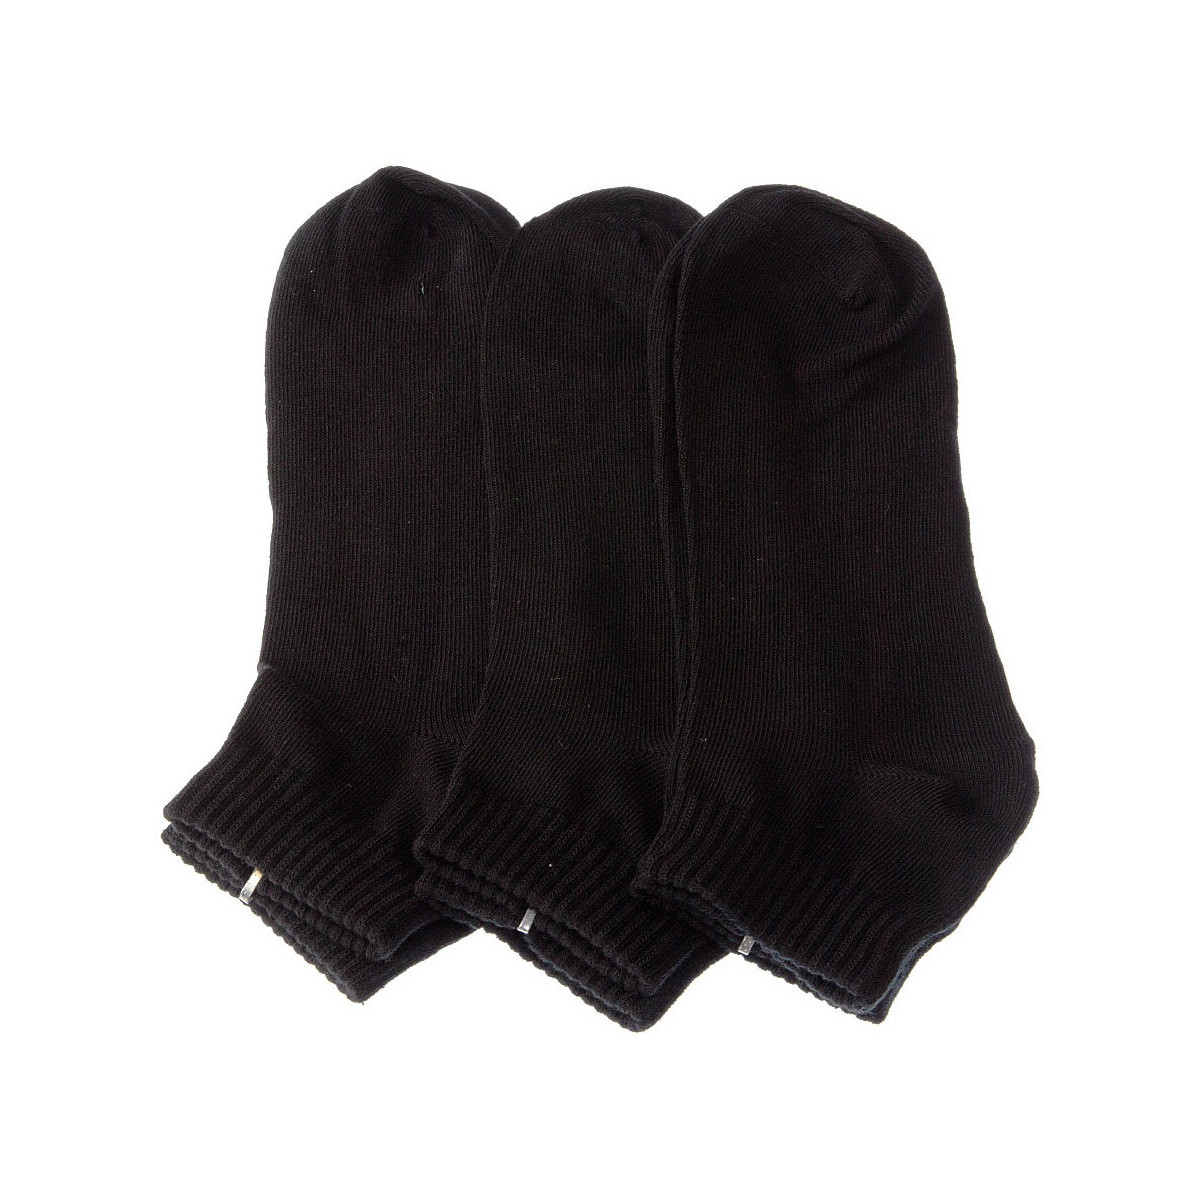 Sous-vêtements Femme Chaussettes Intersocks Chaussettes Basses - Coton - Active Noir